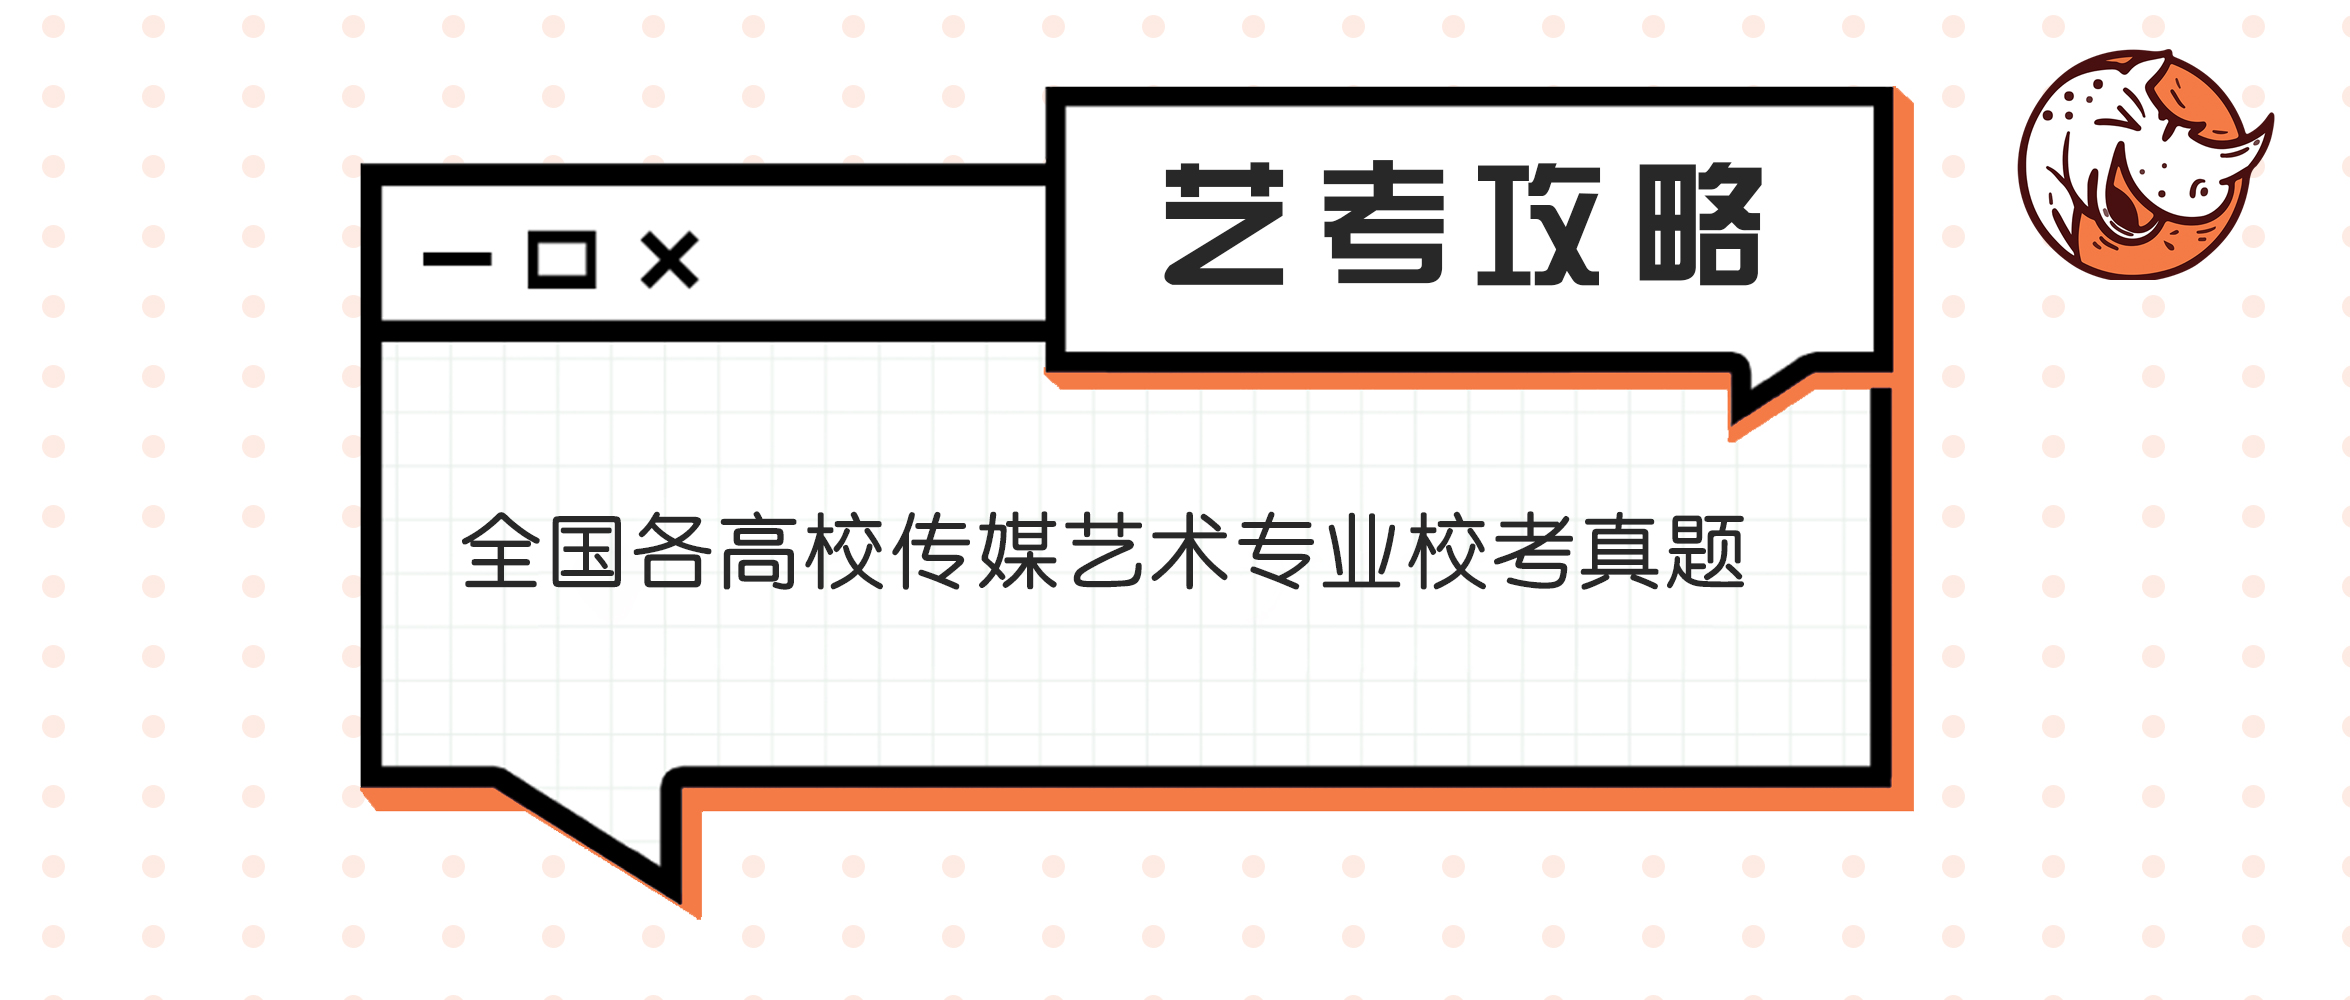 2020年四川文化艺术学院戏剧学专业招生考试试题